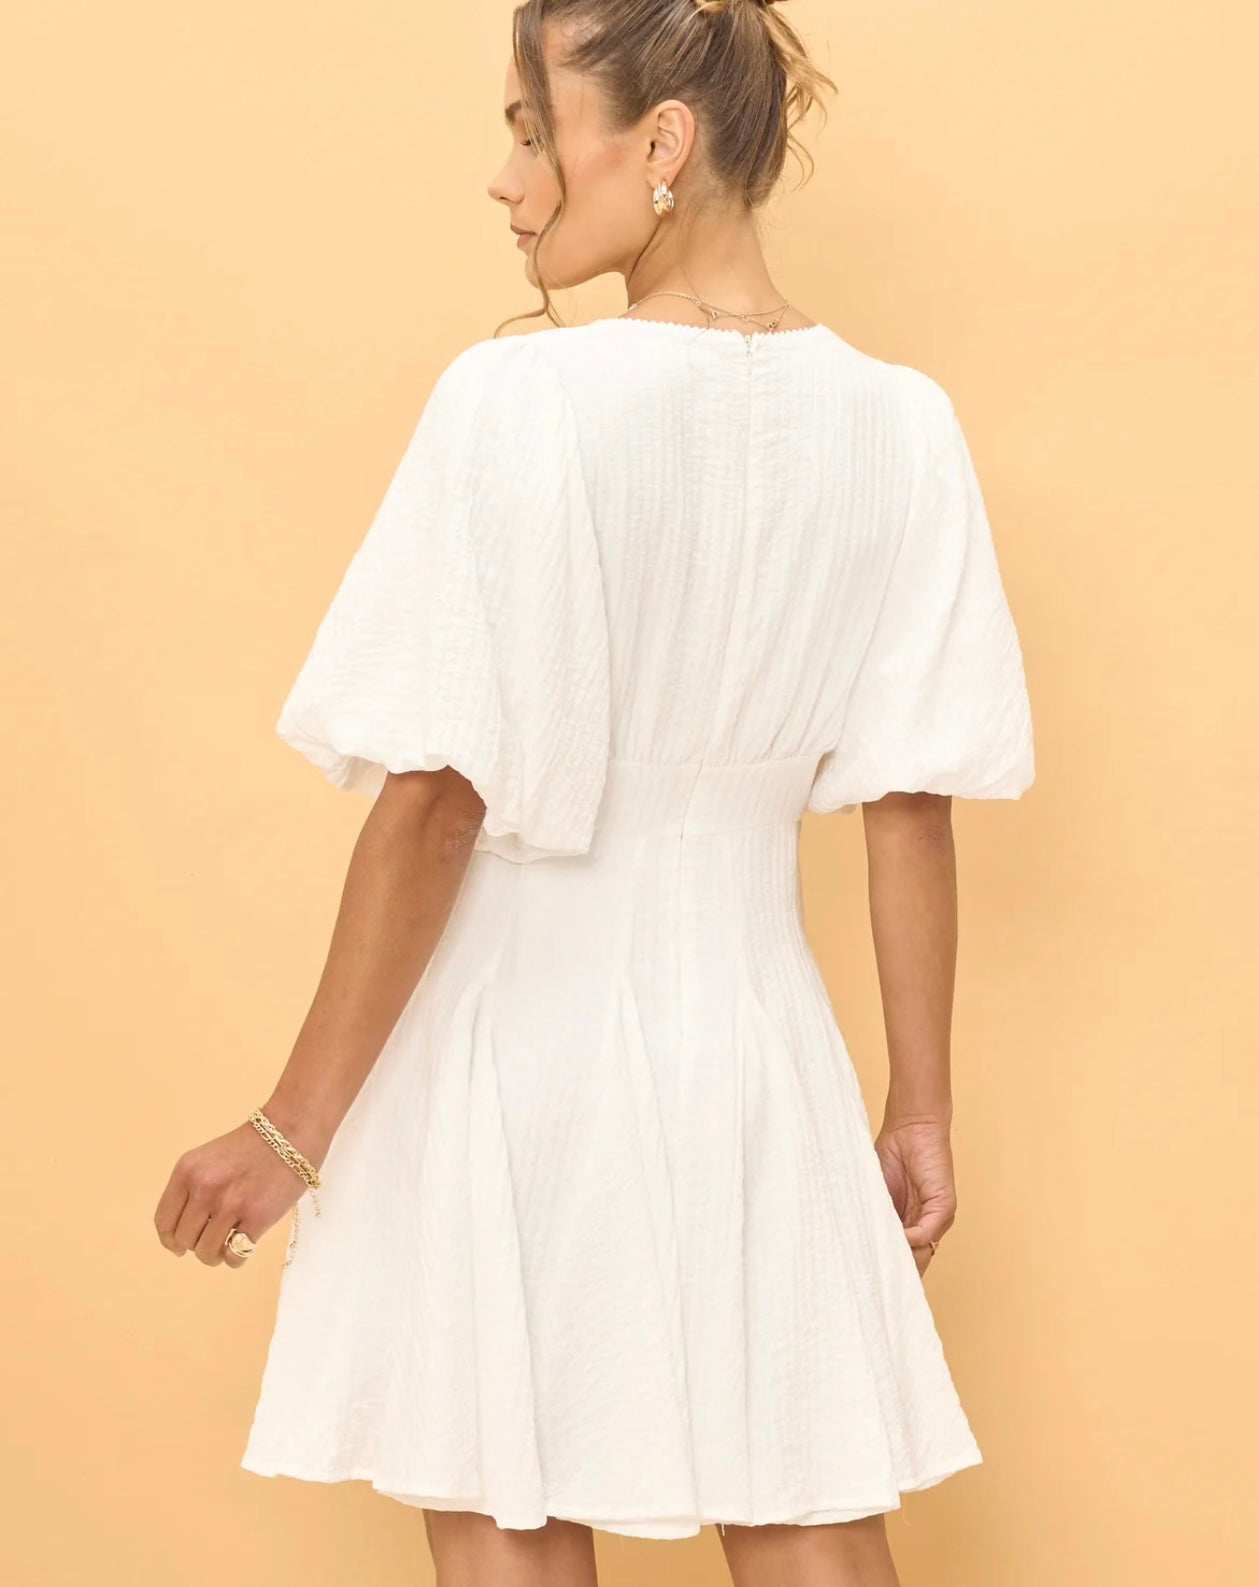 Lakeyo Wren White Godet Mini Dress